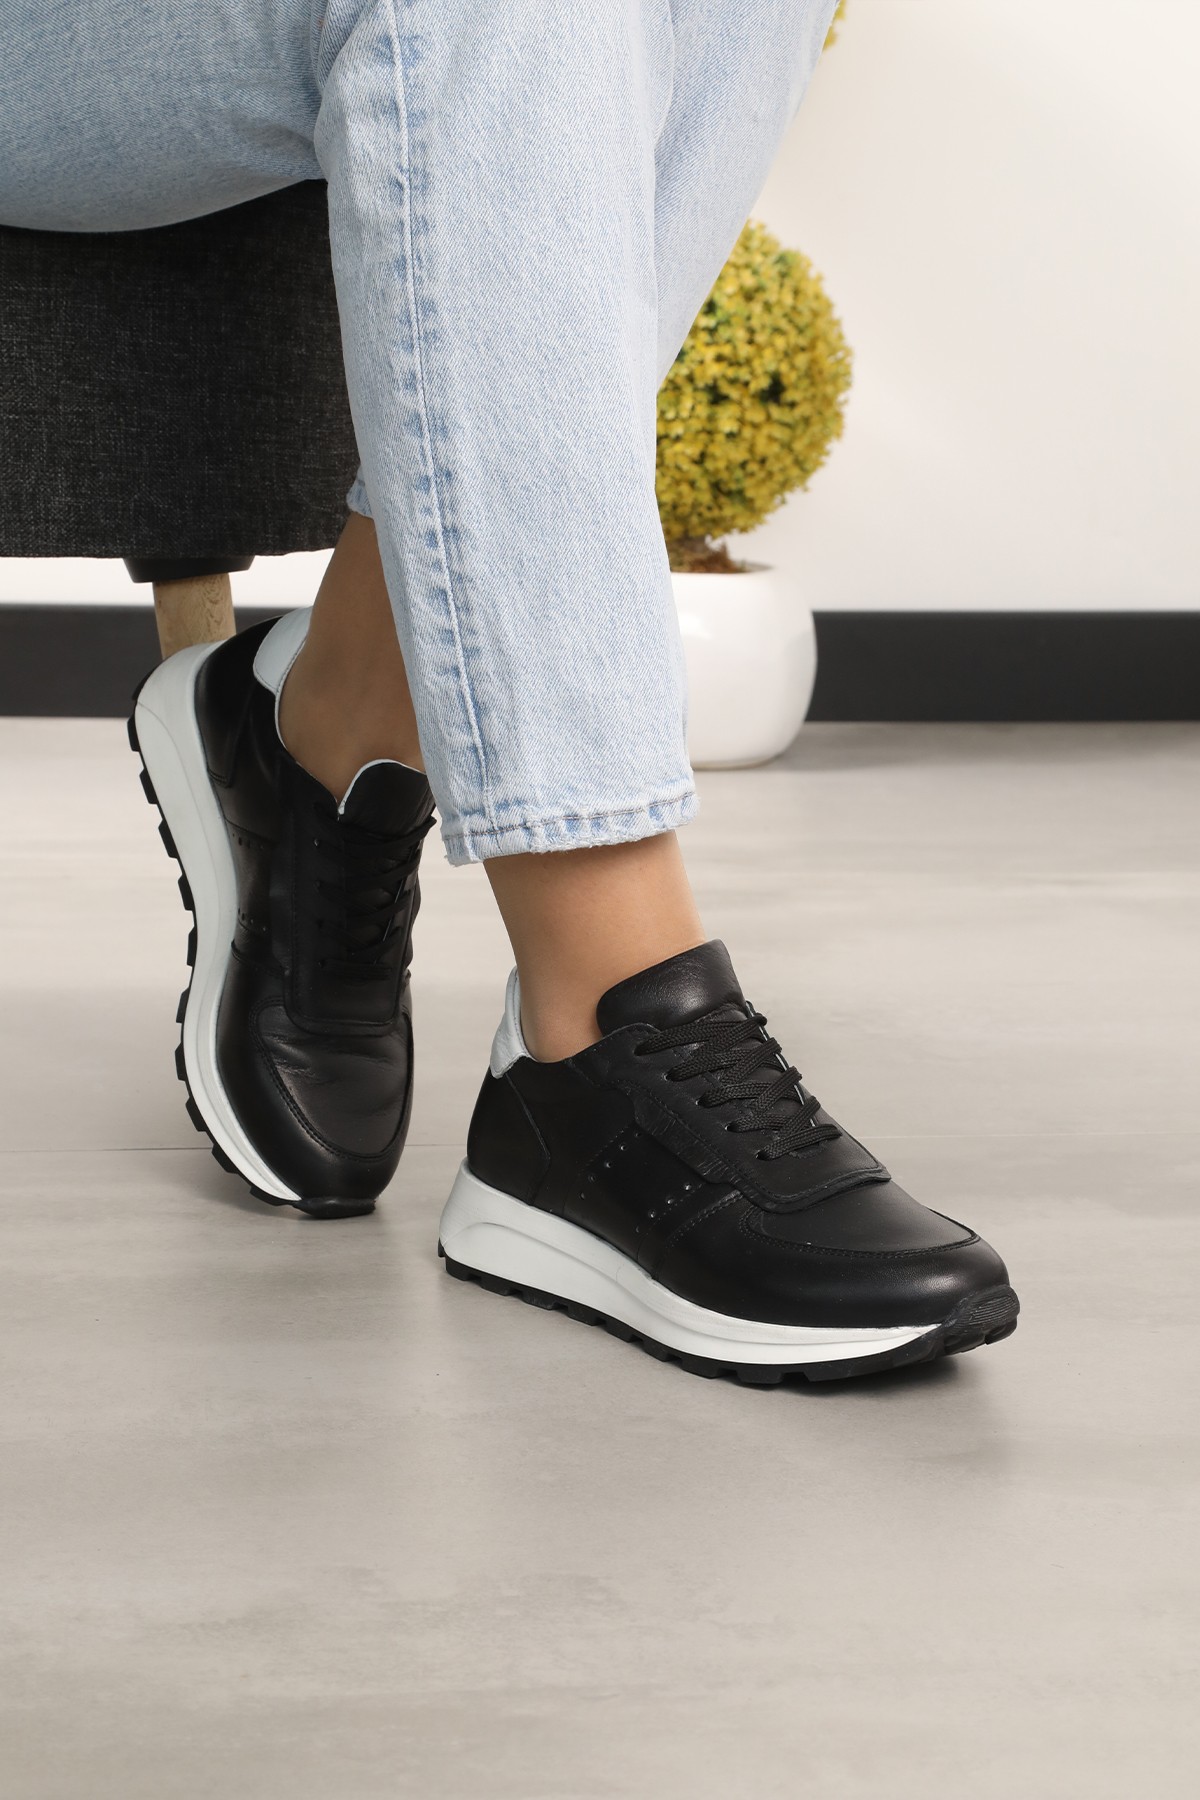 Cooliza Hakiki Deri Renkli Bağcıklı Günlük Rahat Kadın Spor Ayakkabı - Siyah